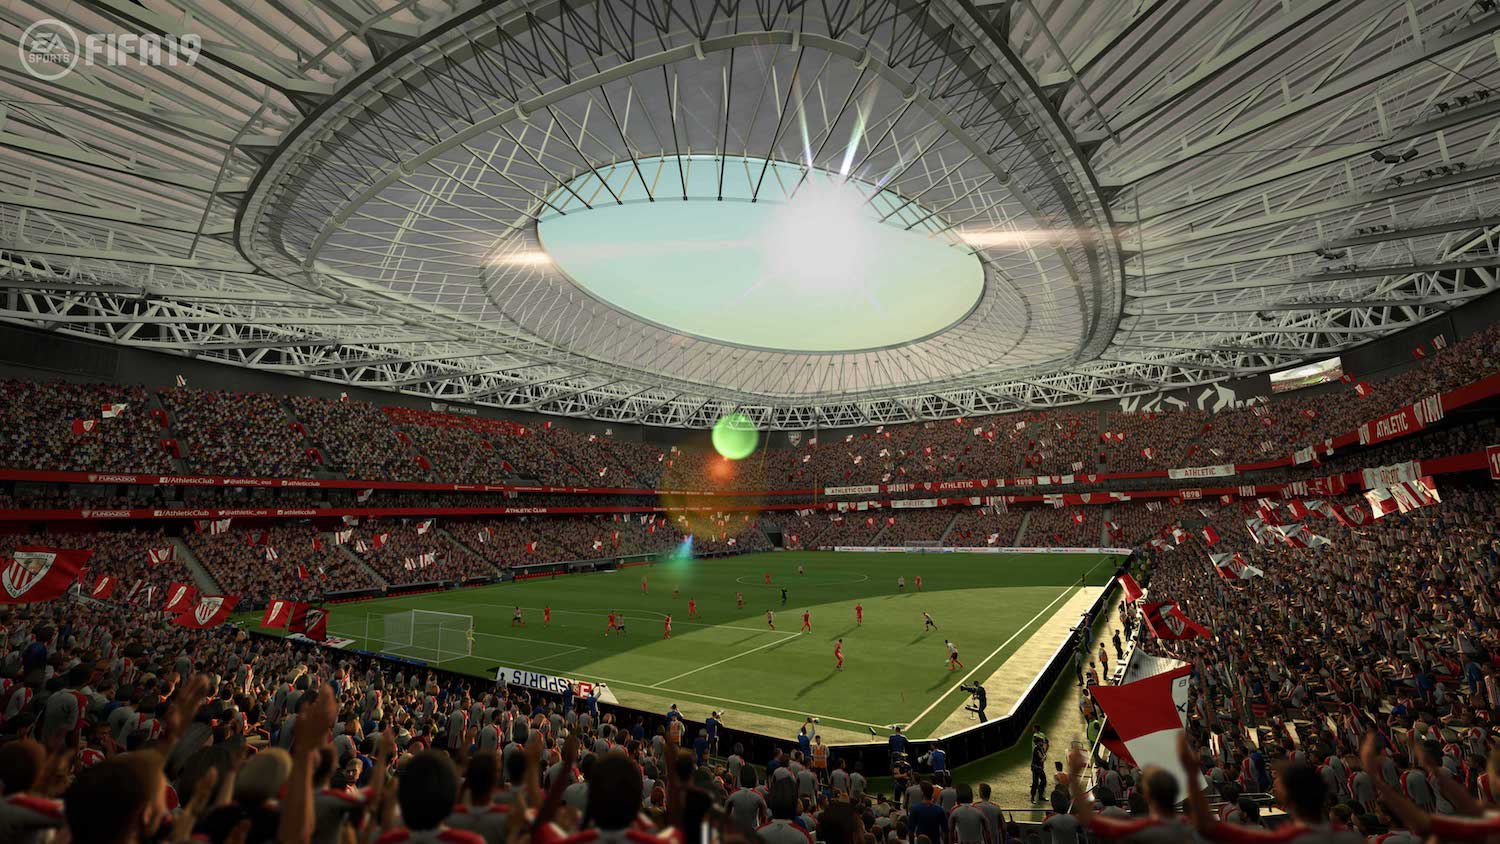 Arranca LaLiga en FIFA 19 con más de 16 estadios españoles y nuevos reconocimientos faciales